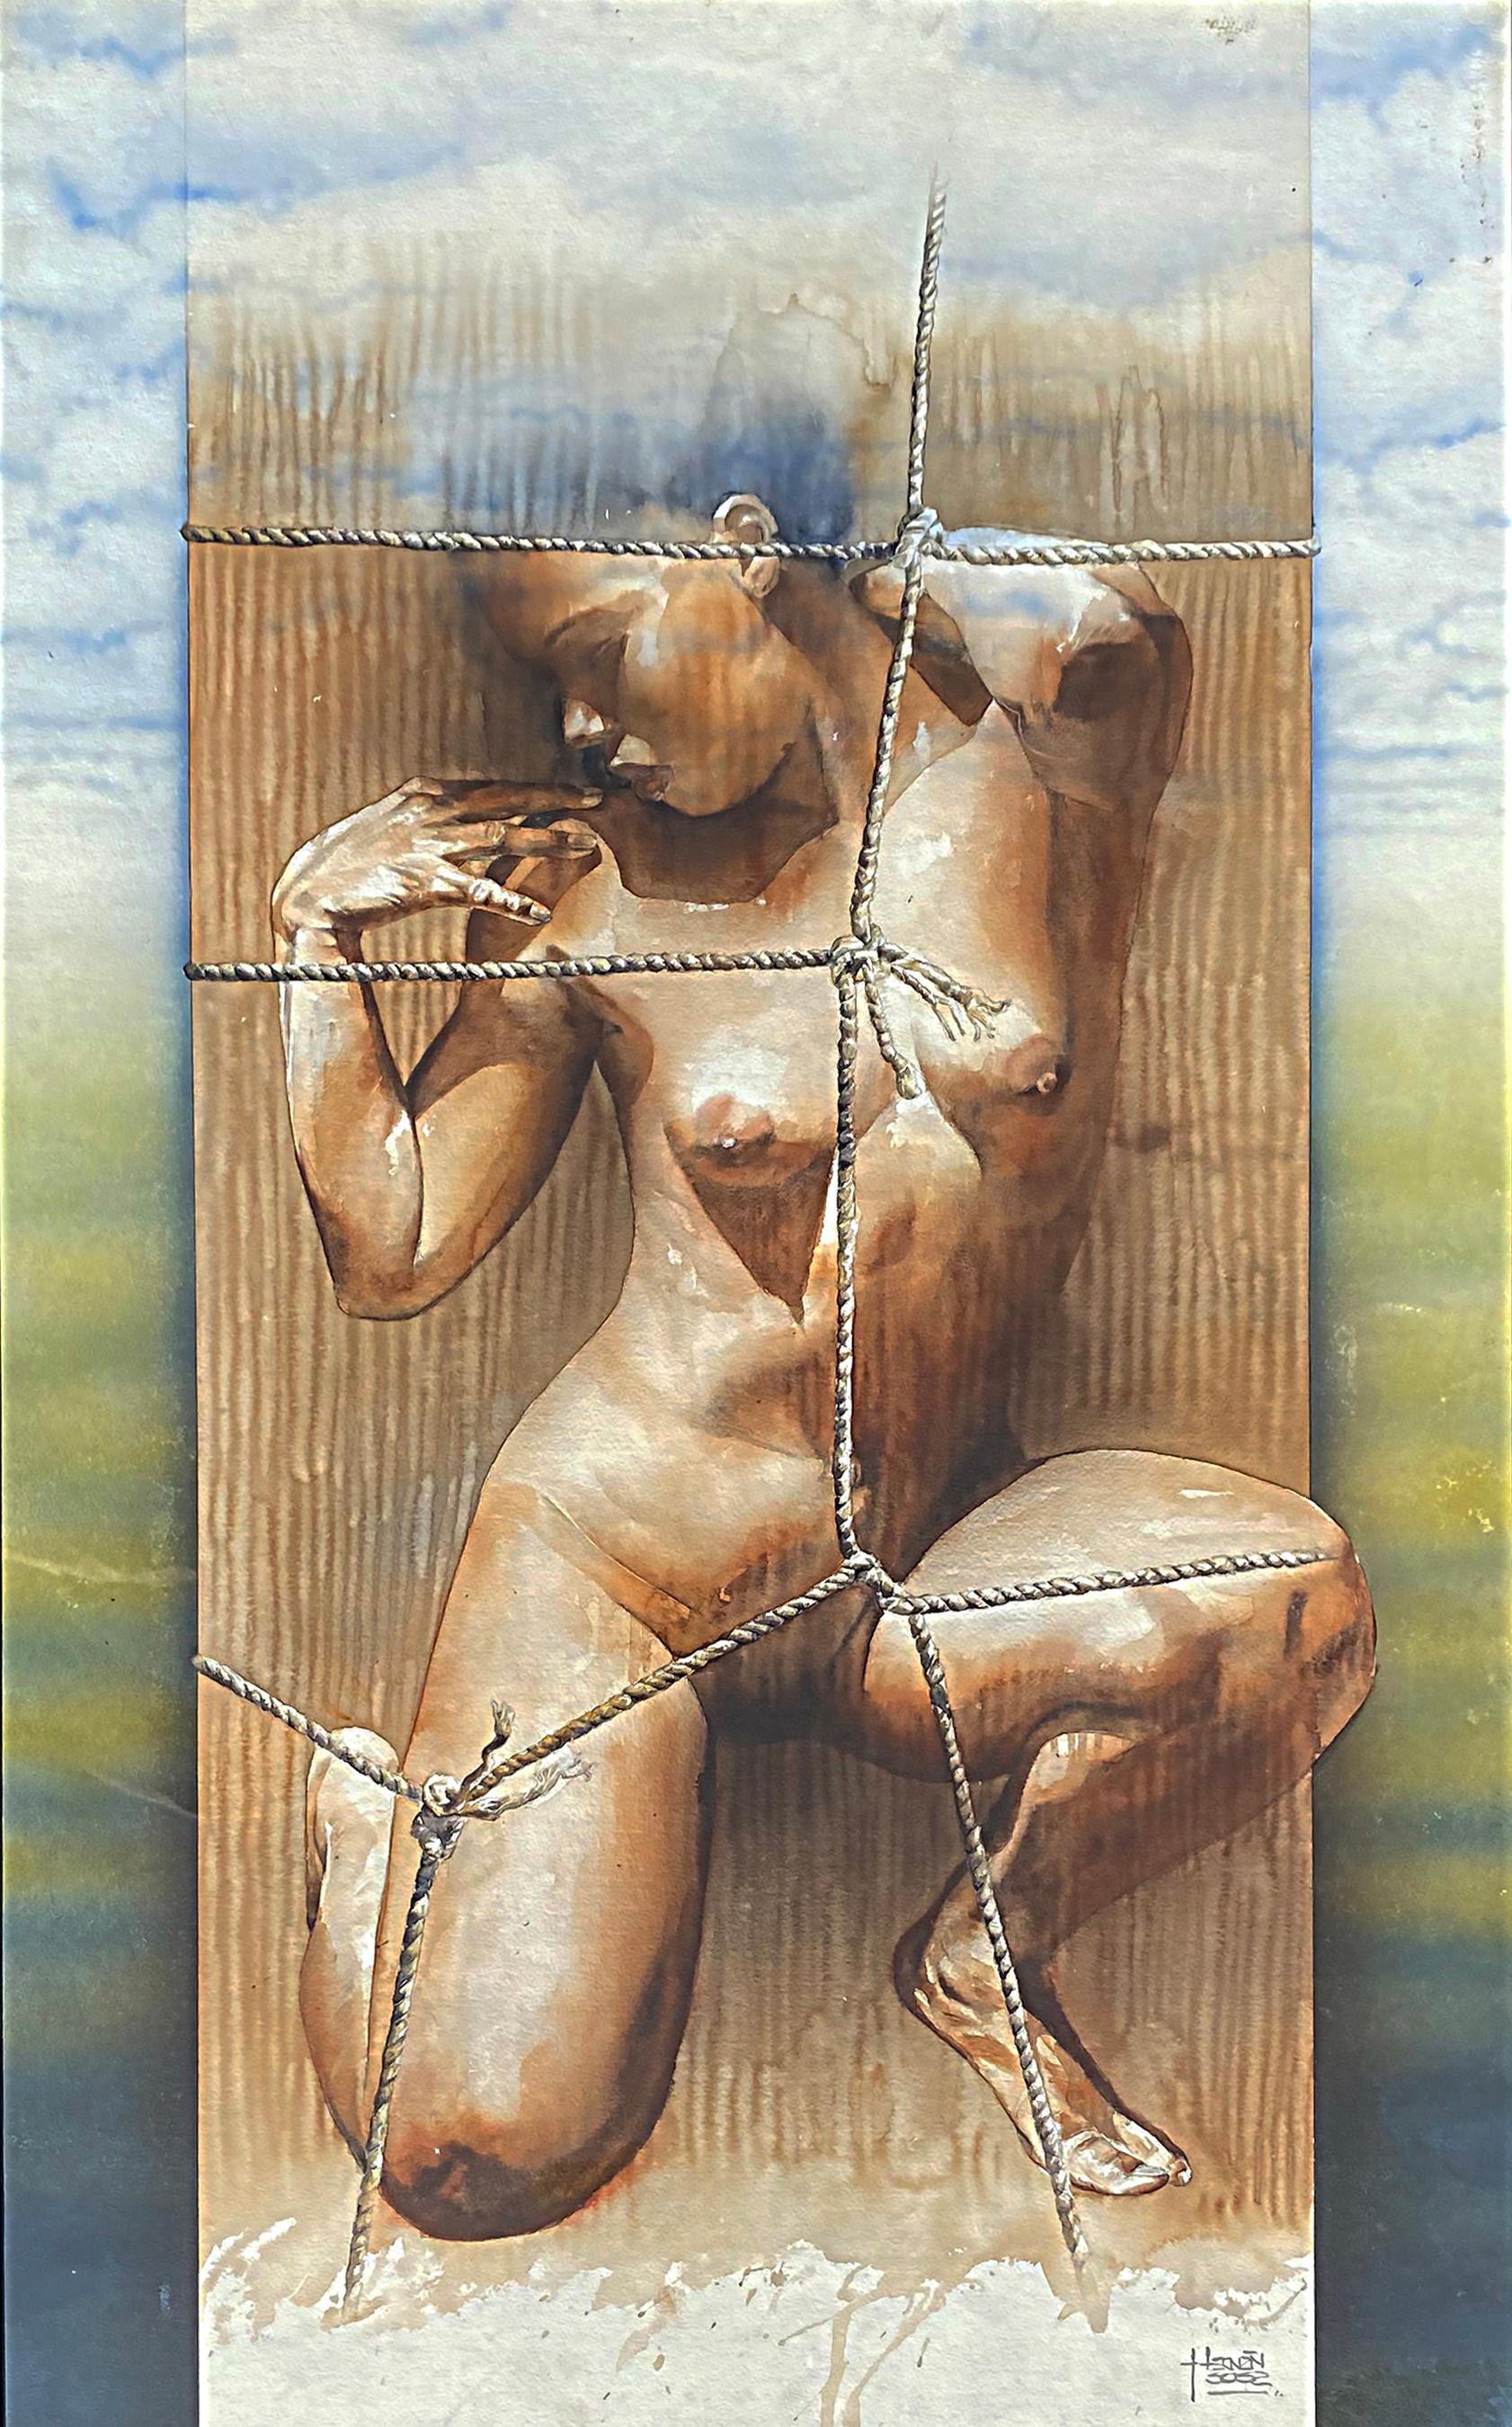 Hernán Sosa Nu aquarelle sur papier encadré sous verre 

Est proposée à la vente une aquarelle originale sur papier encadrée sous verre de l'artiste péruvien Hernán Sosa (né en 1965). Cette aquarelle figurative dépeint un nu féminin qui est